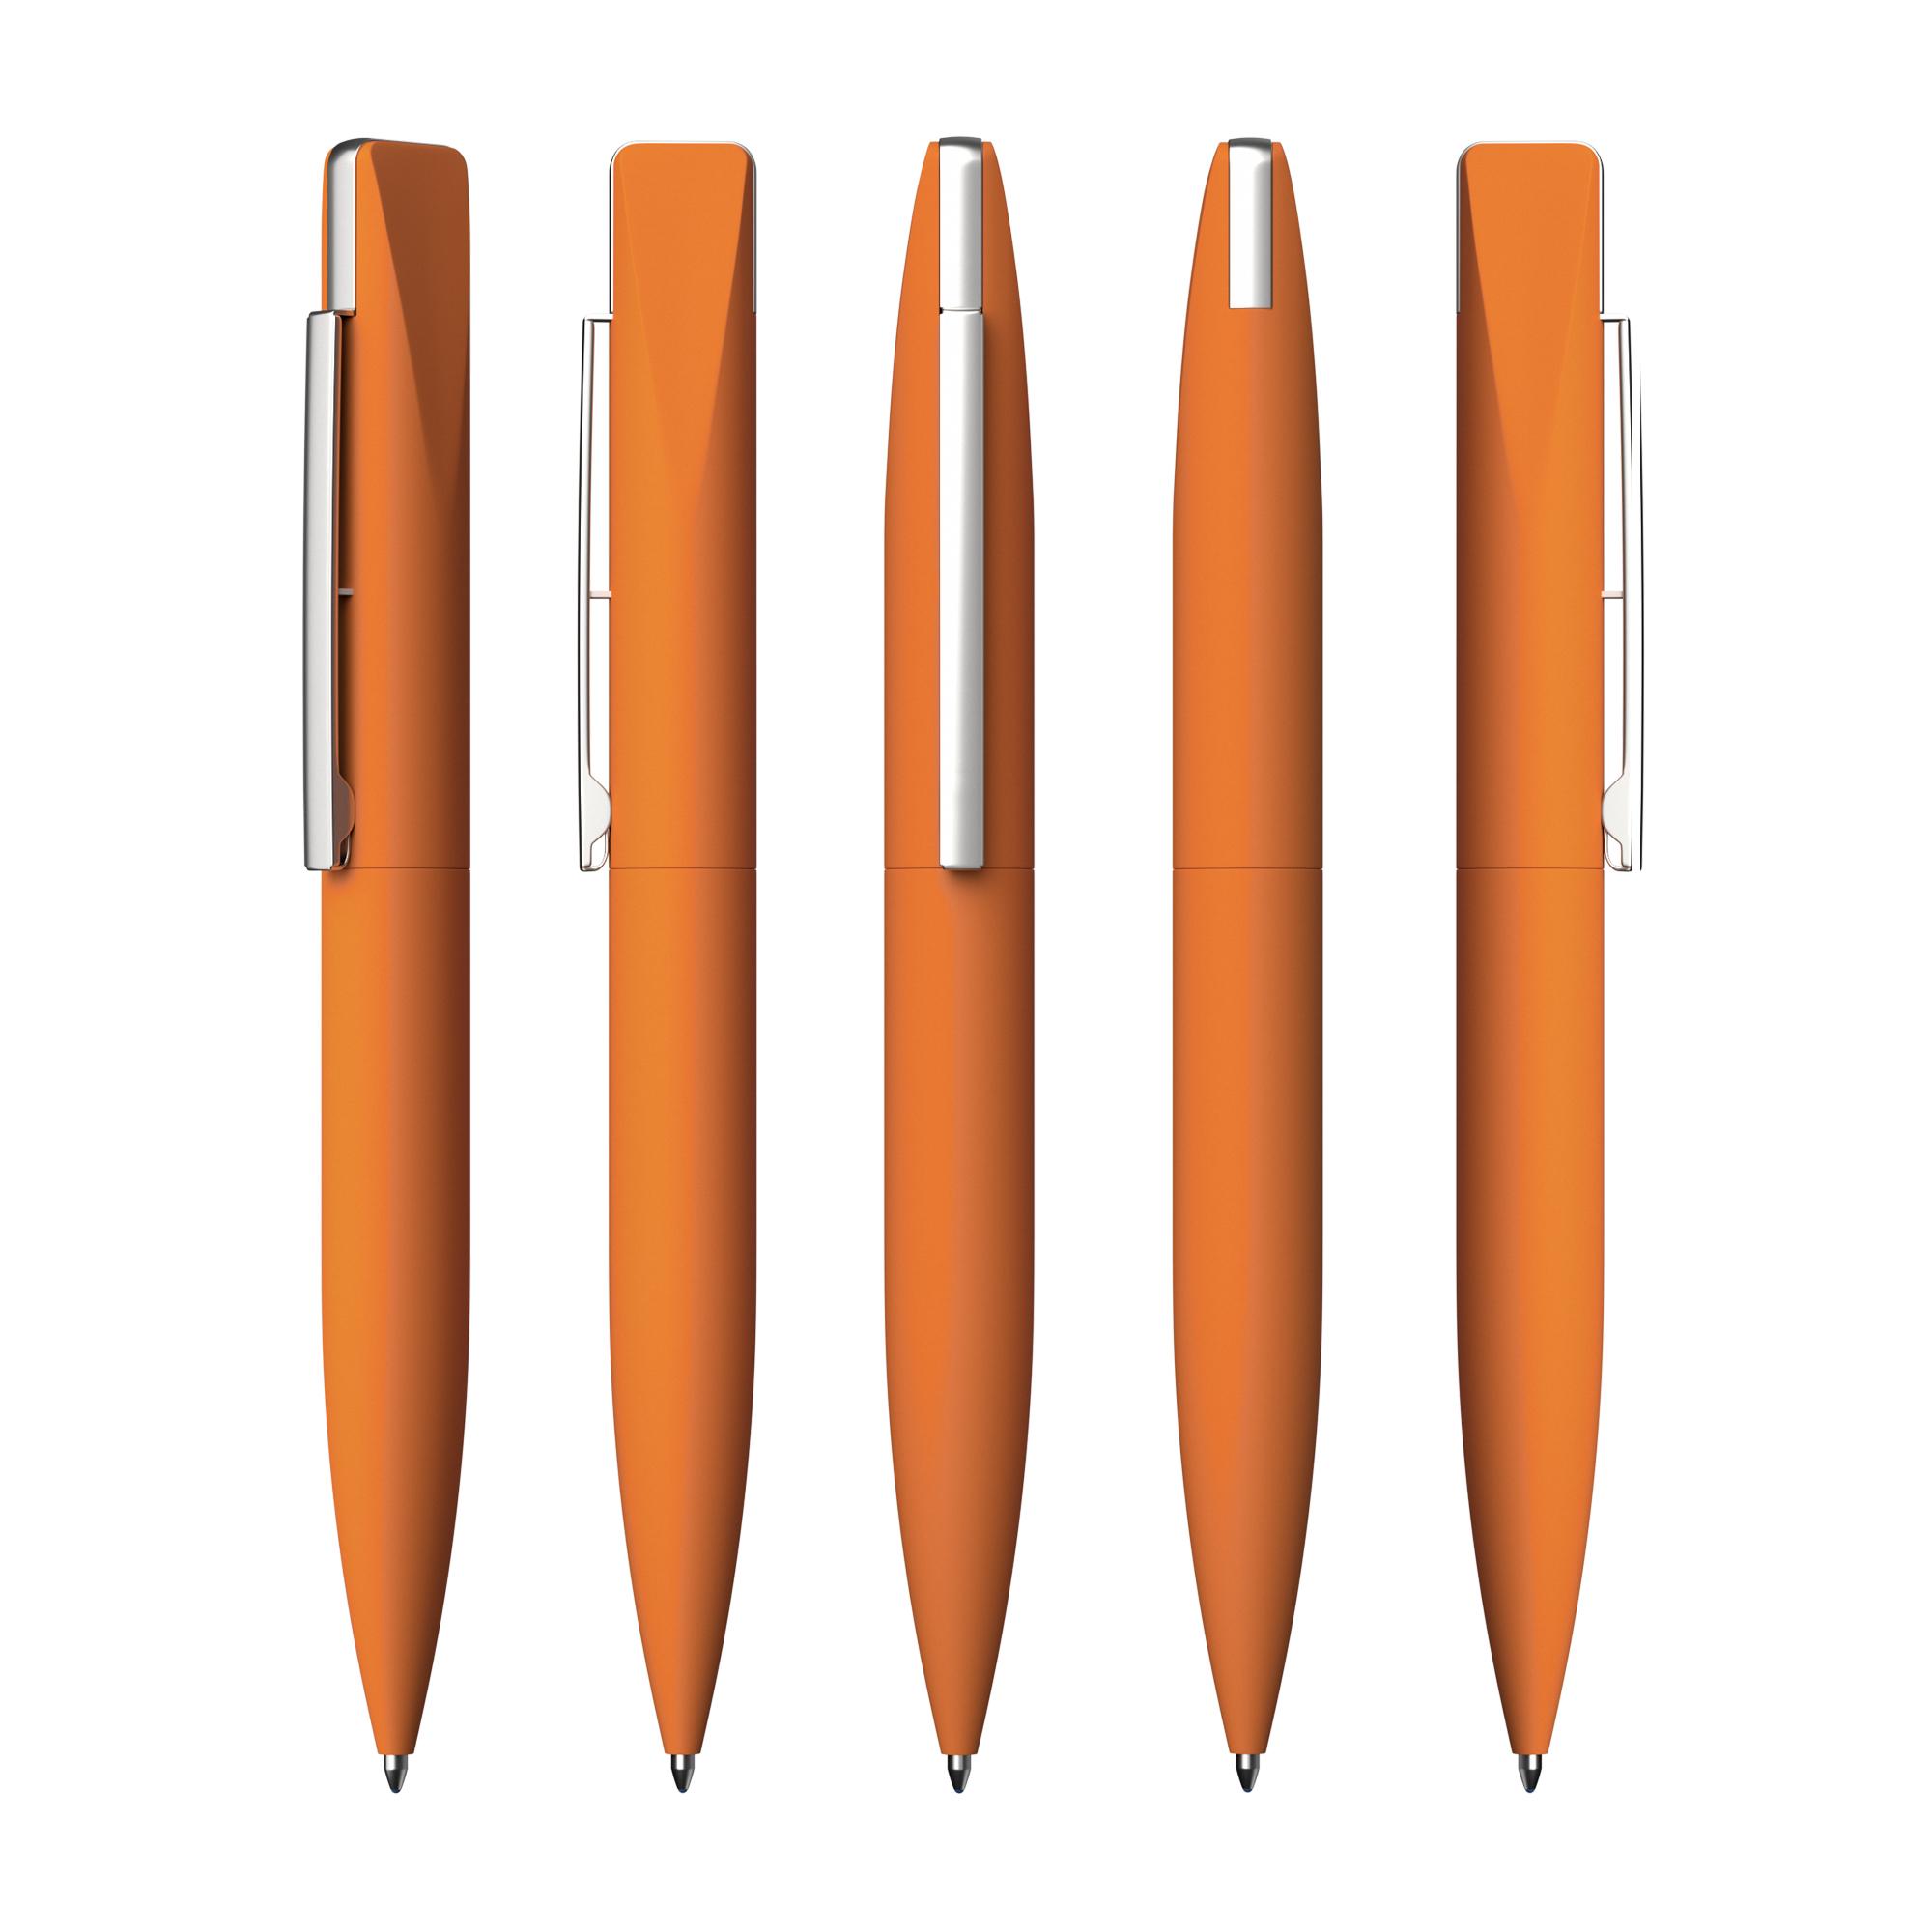 Ручка шариковая "Callisto" с флеш-картой 16Gb, оранжевый, покрытие soft touch, цвет оранжевый, фото 2